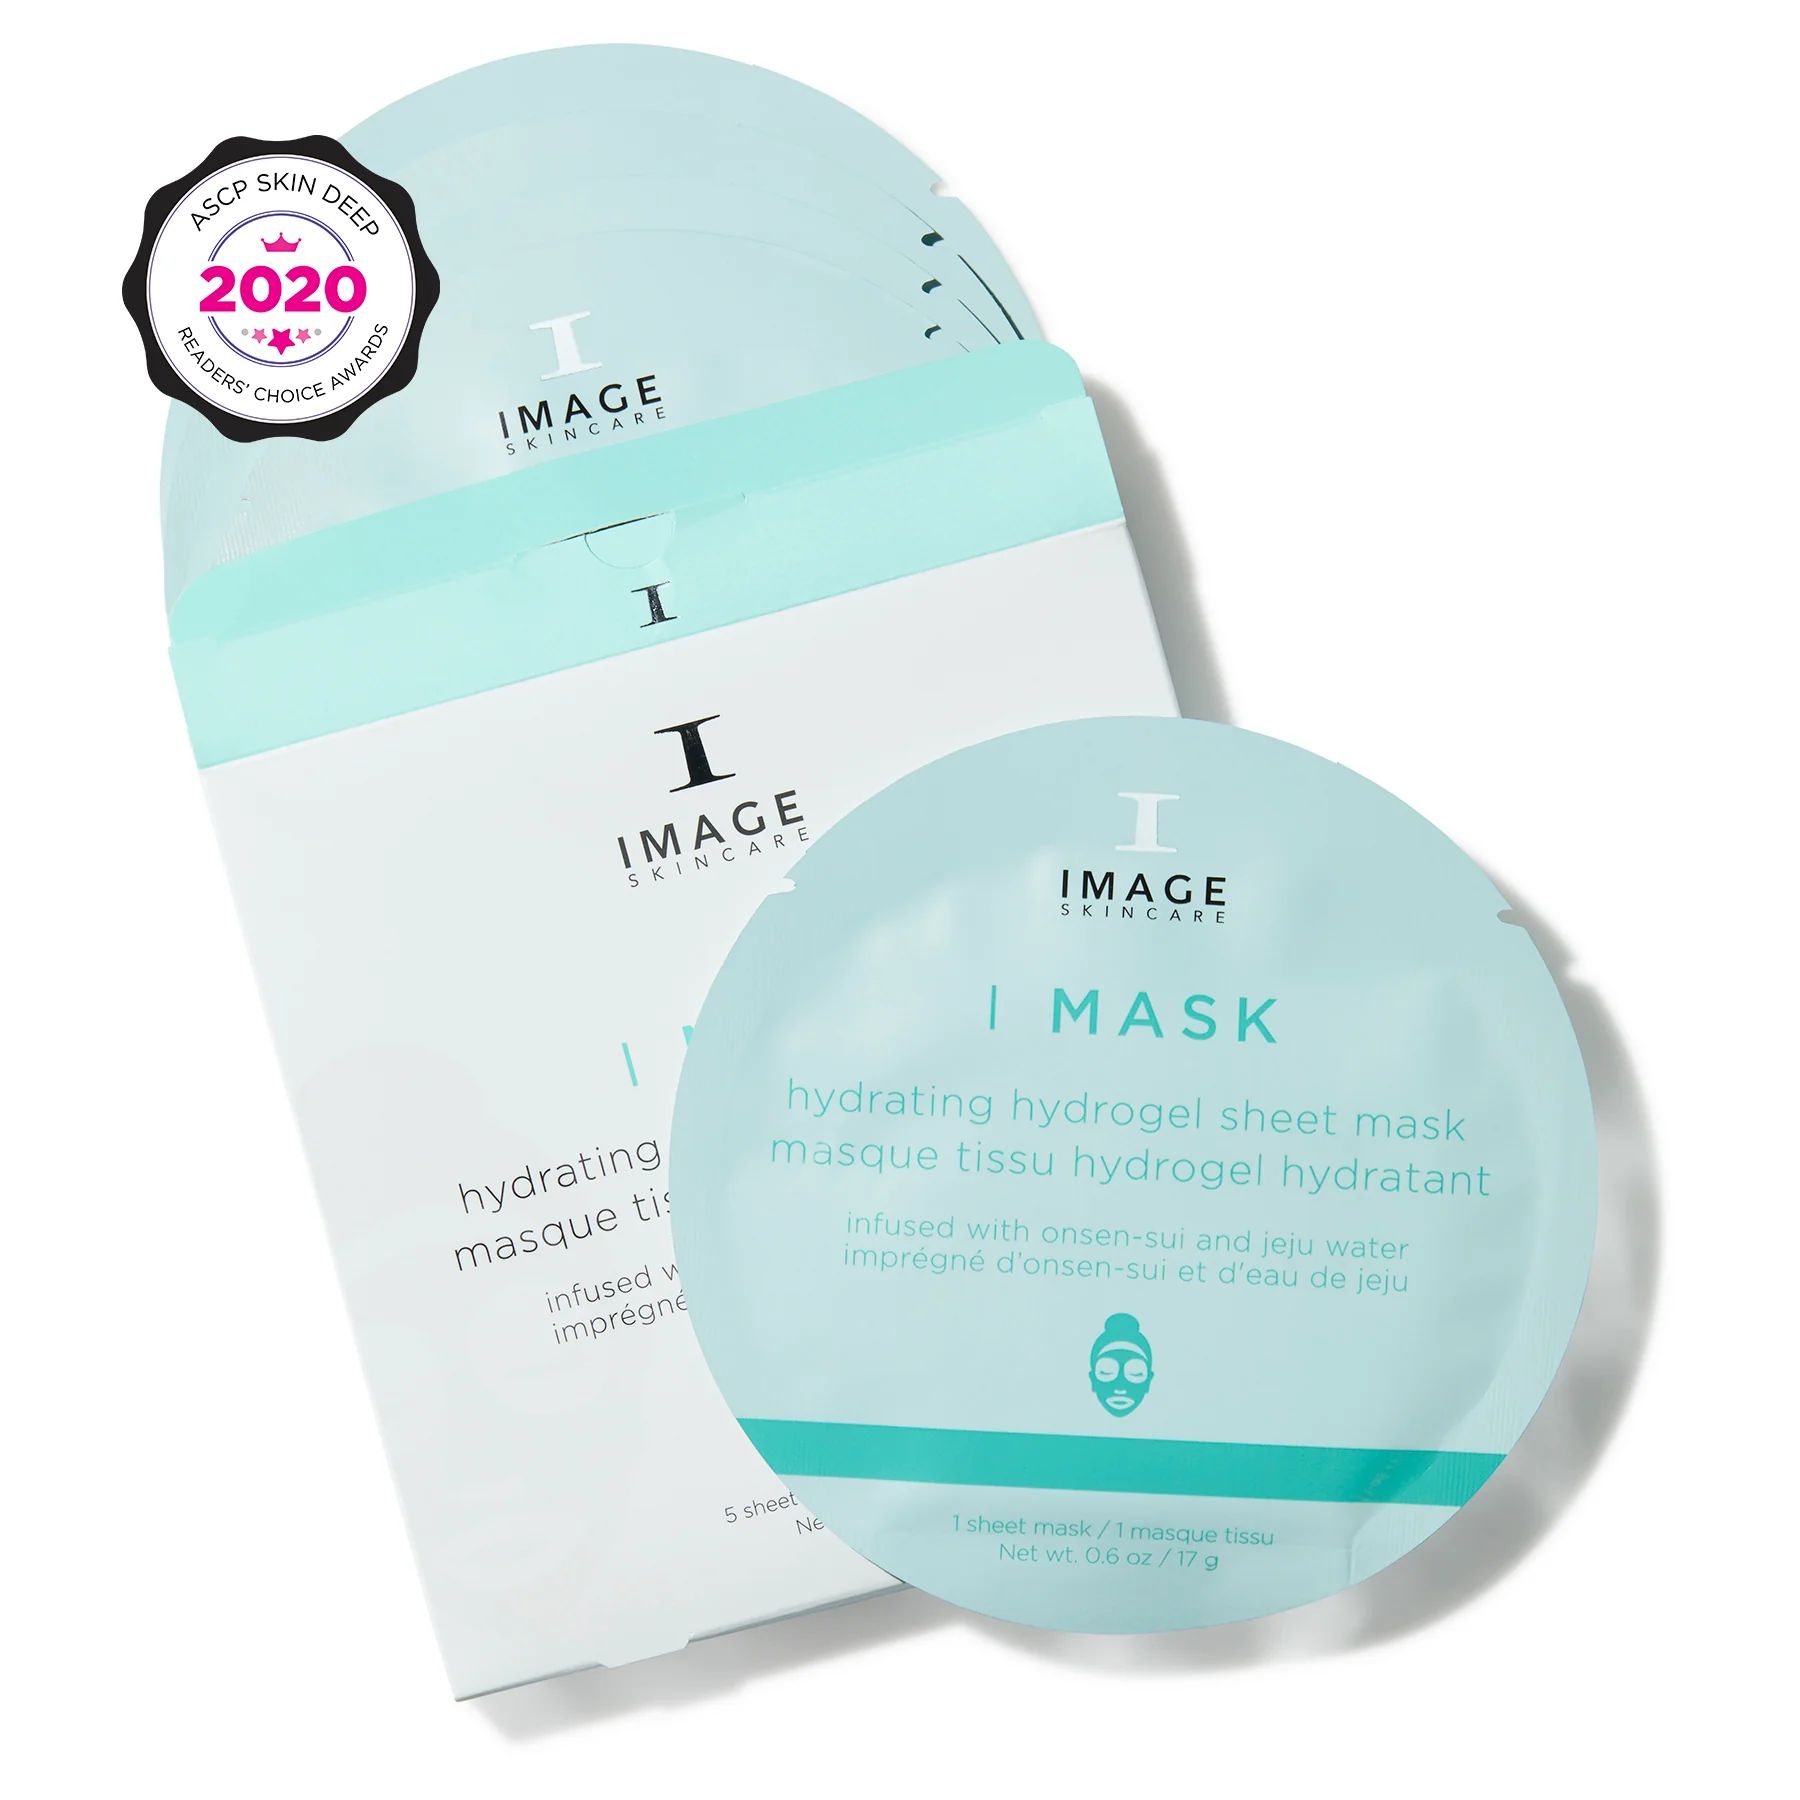 I MASK hydrating hydrogel sheet mask (5 pack) | Image Skincare